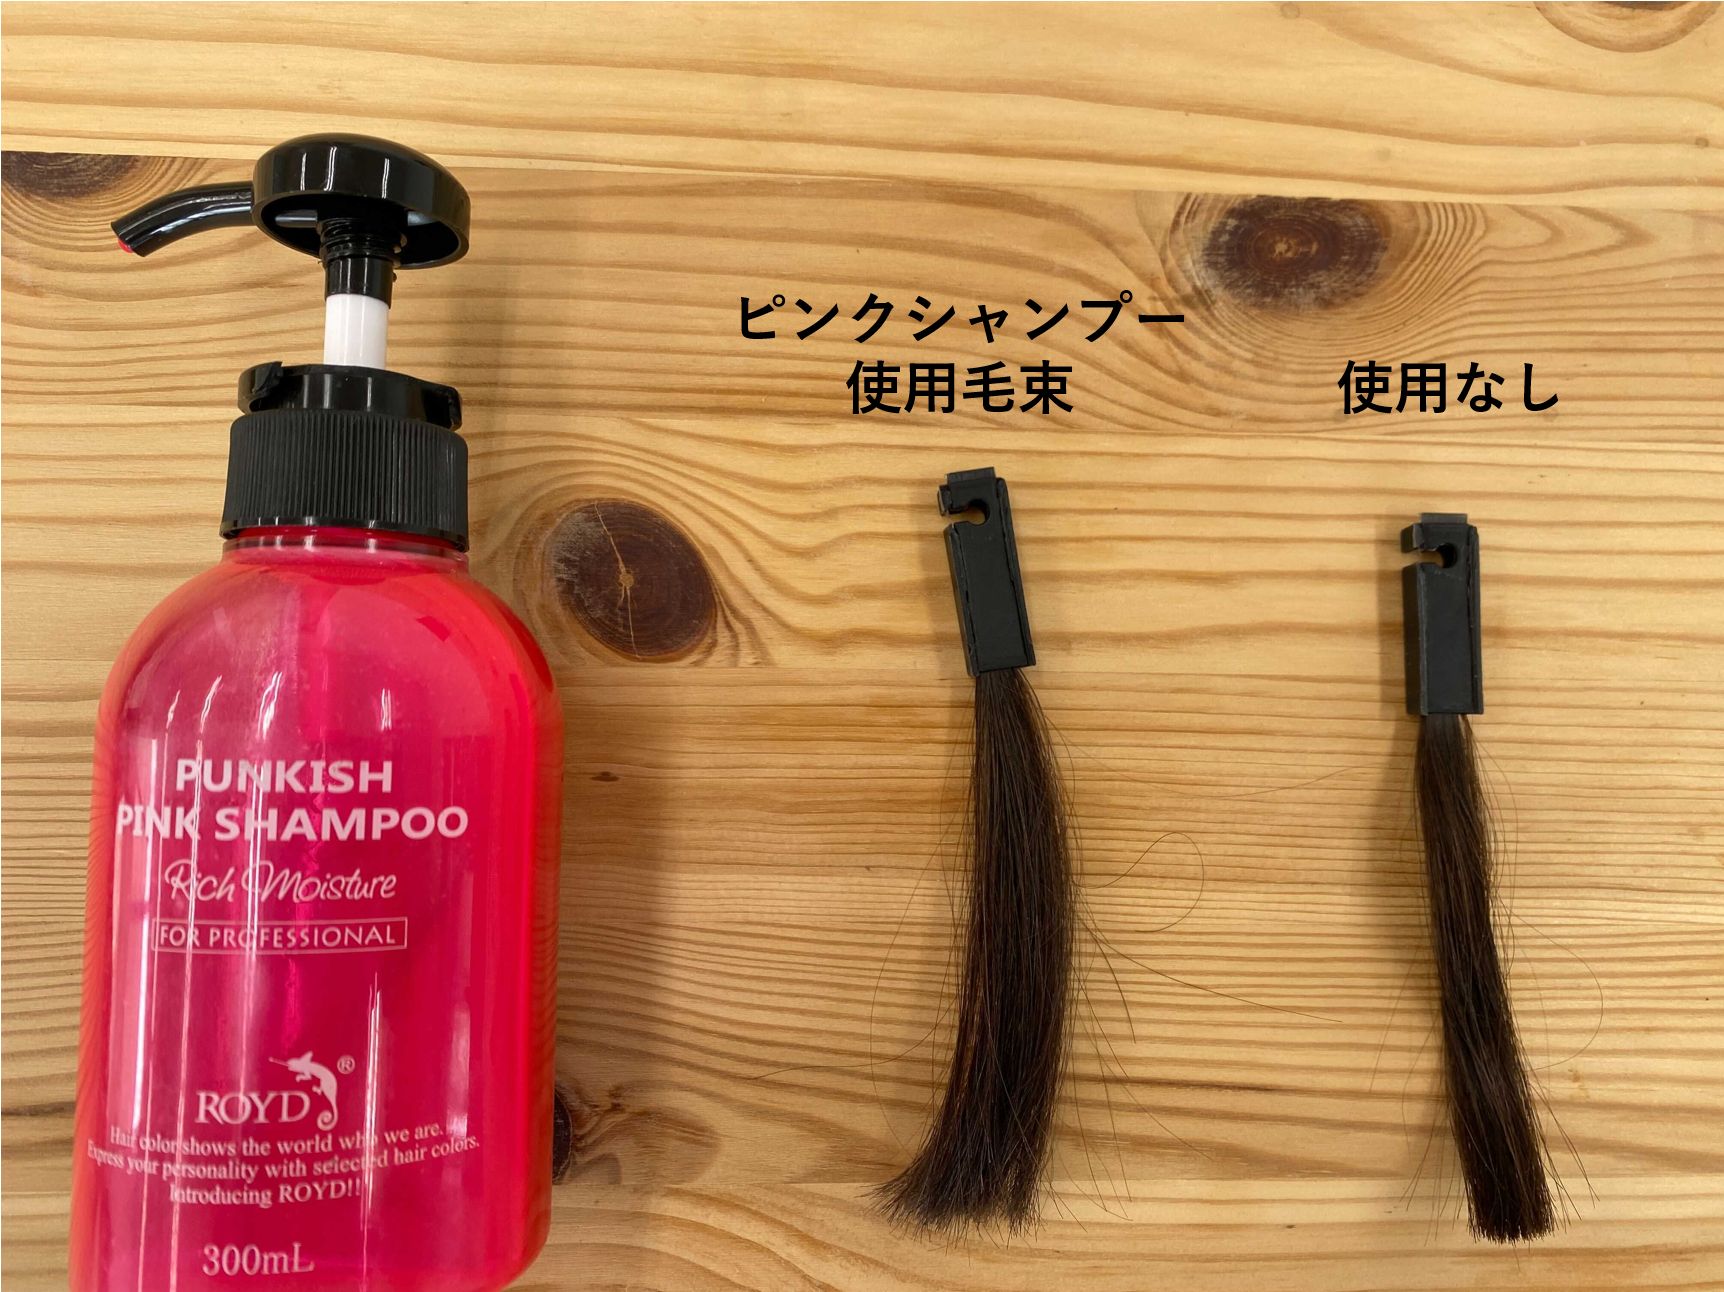 検証 ピンクシャンプーは黒髪のブリーチなしの髪にも効果あり 実際に暗い髪に使用してみた 紫シャンプー解析ランキングlabo